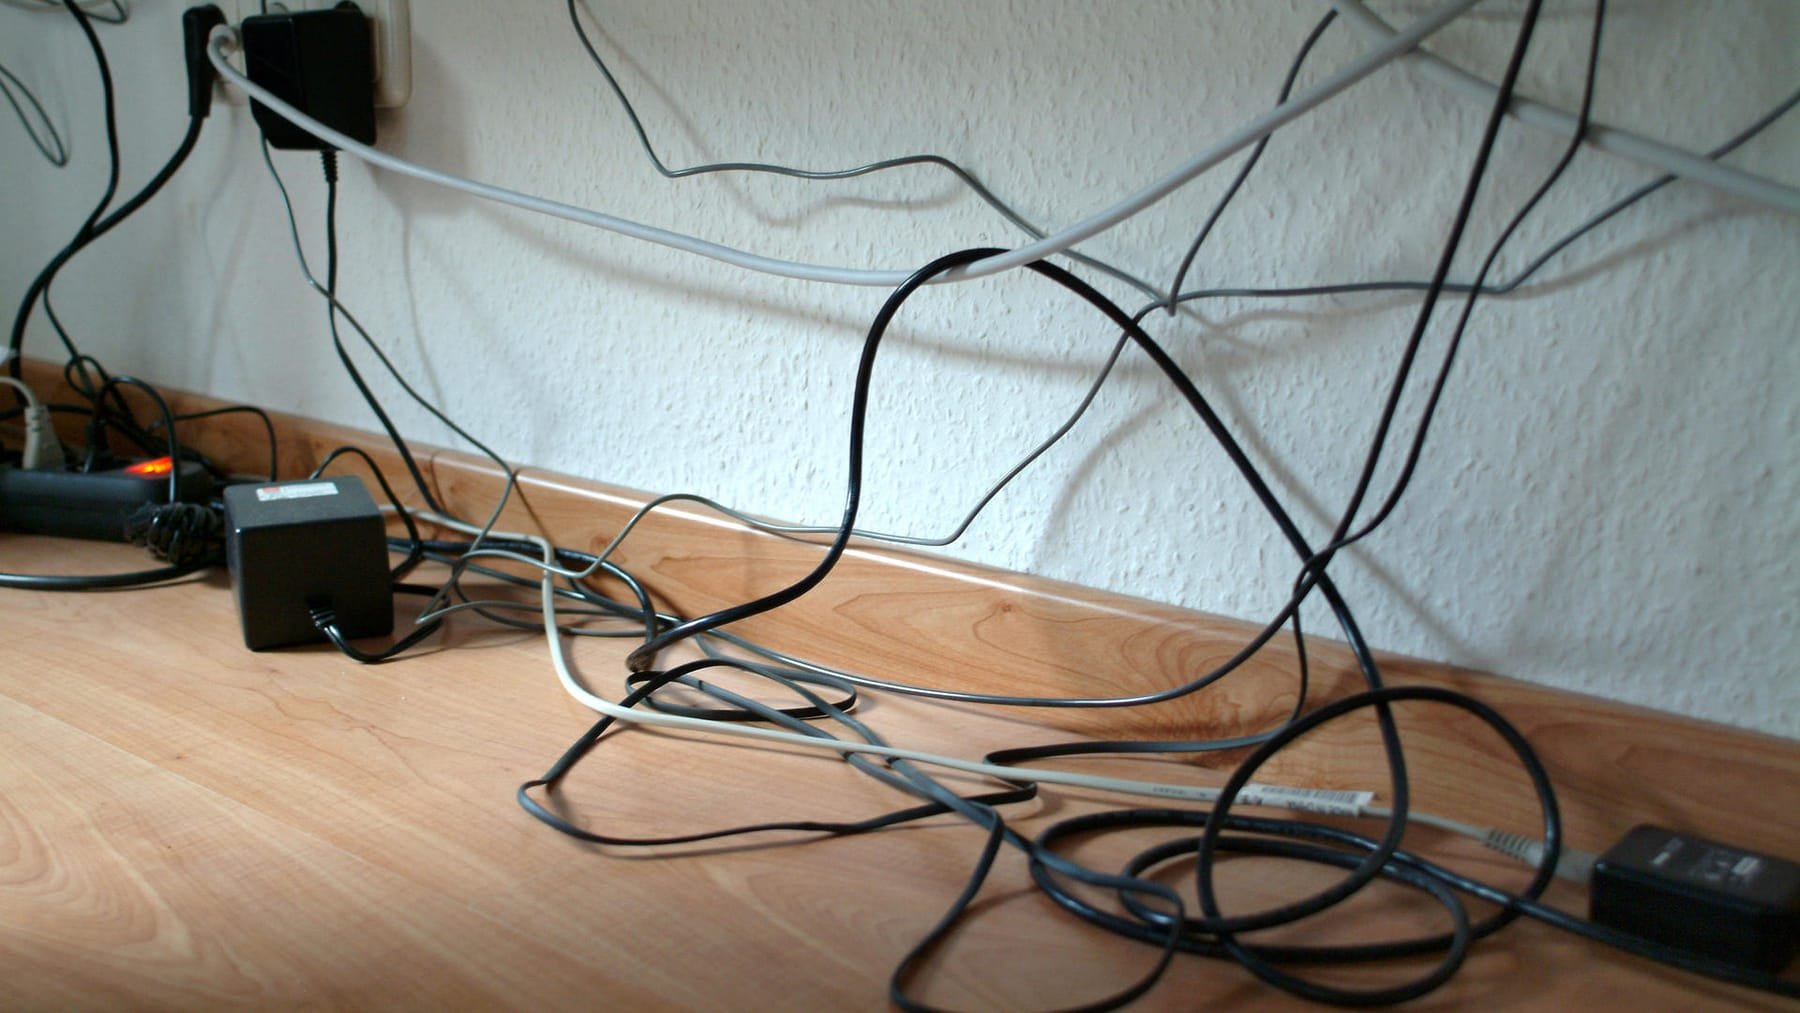 Kabel einfach verstecken: Mit diesen fünf Tipps klappt's